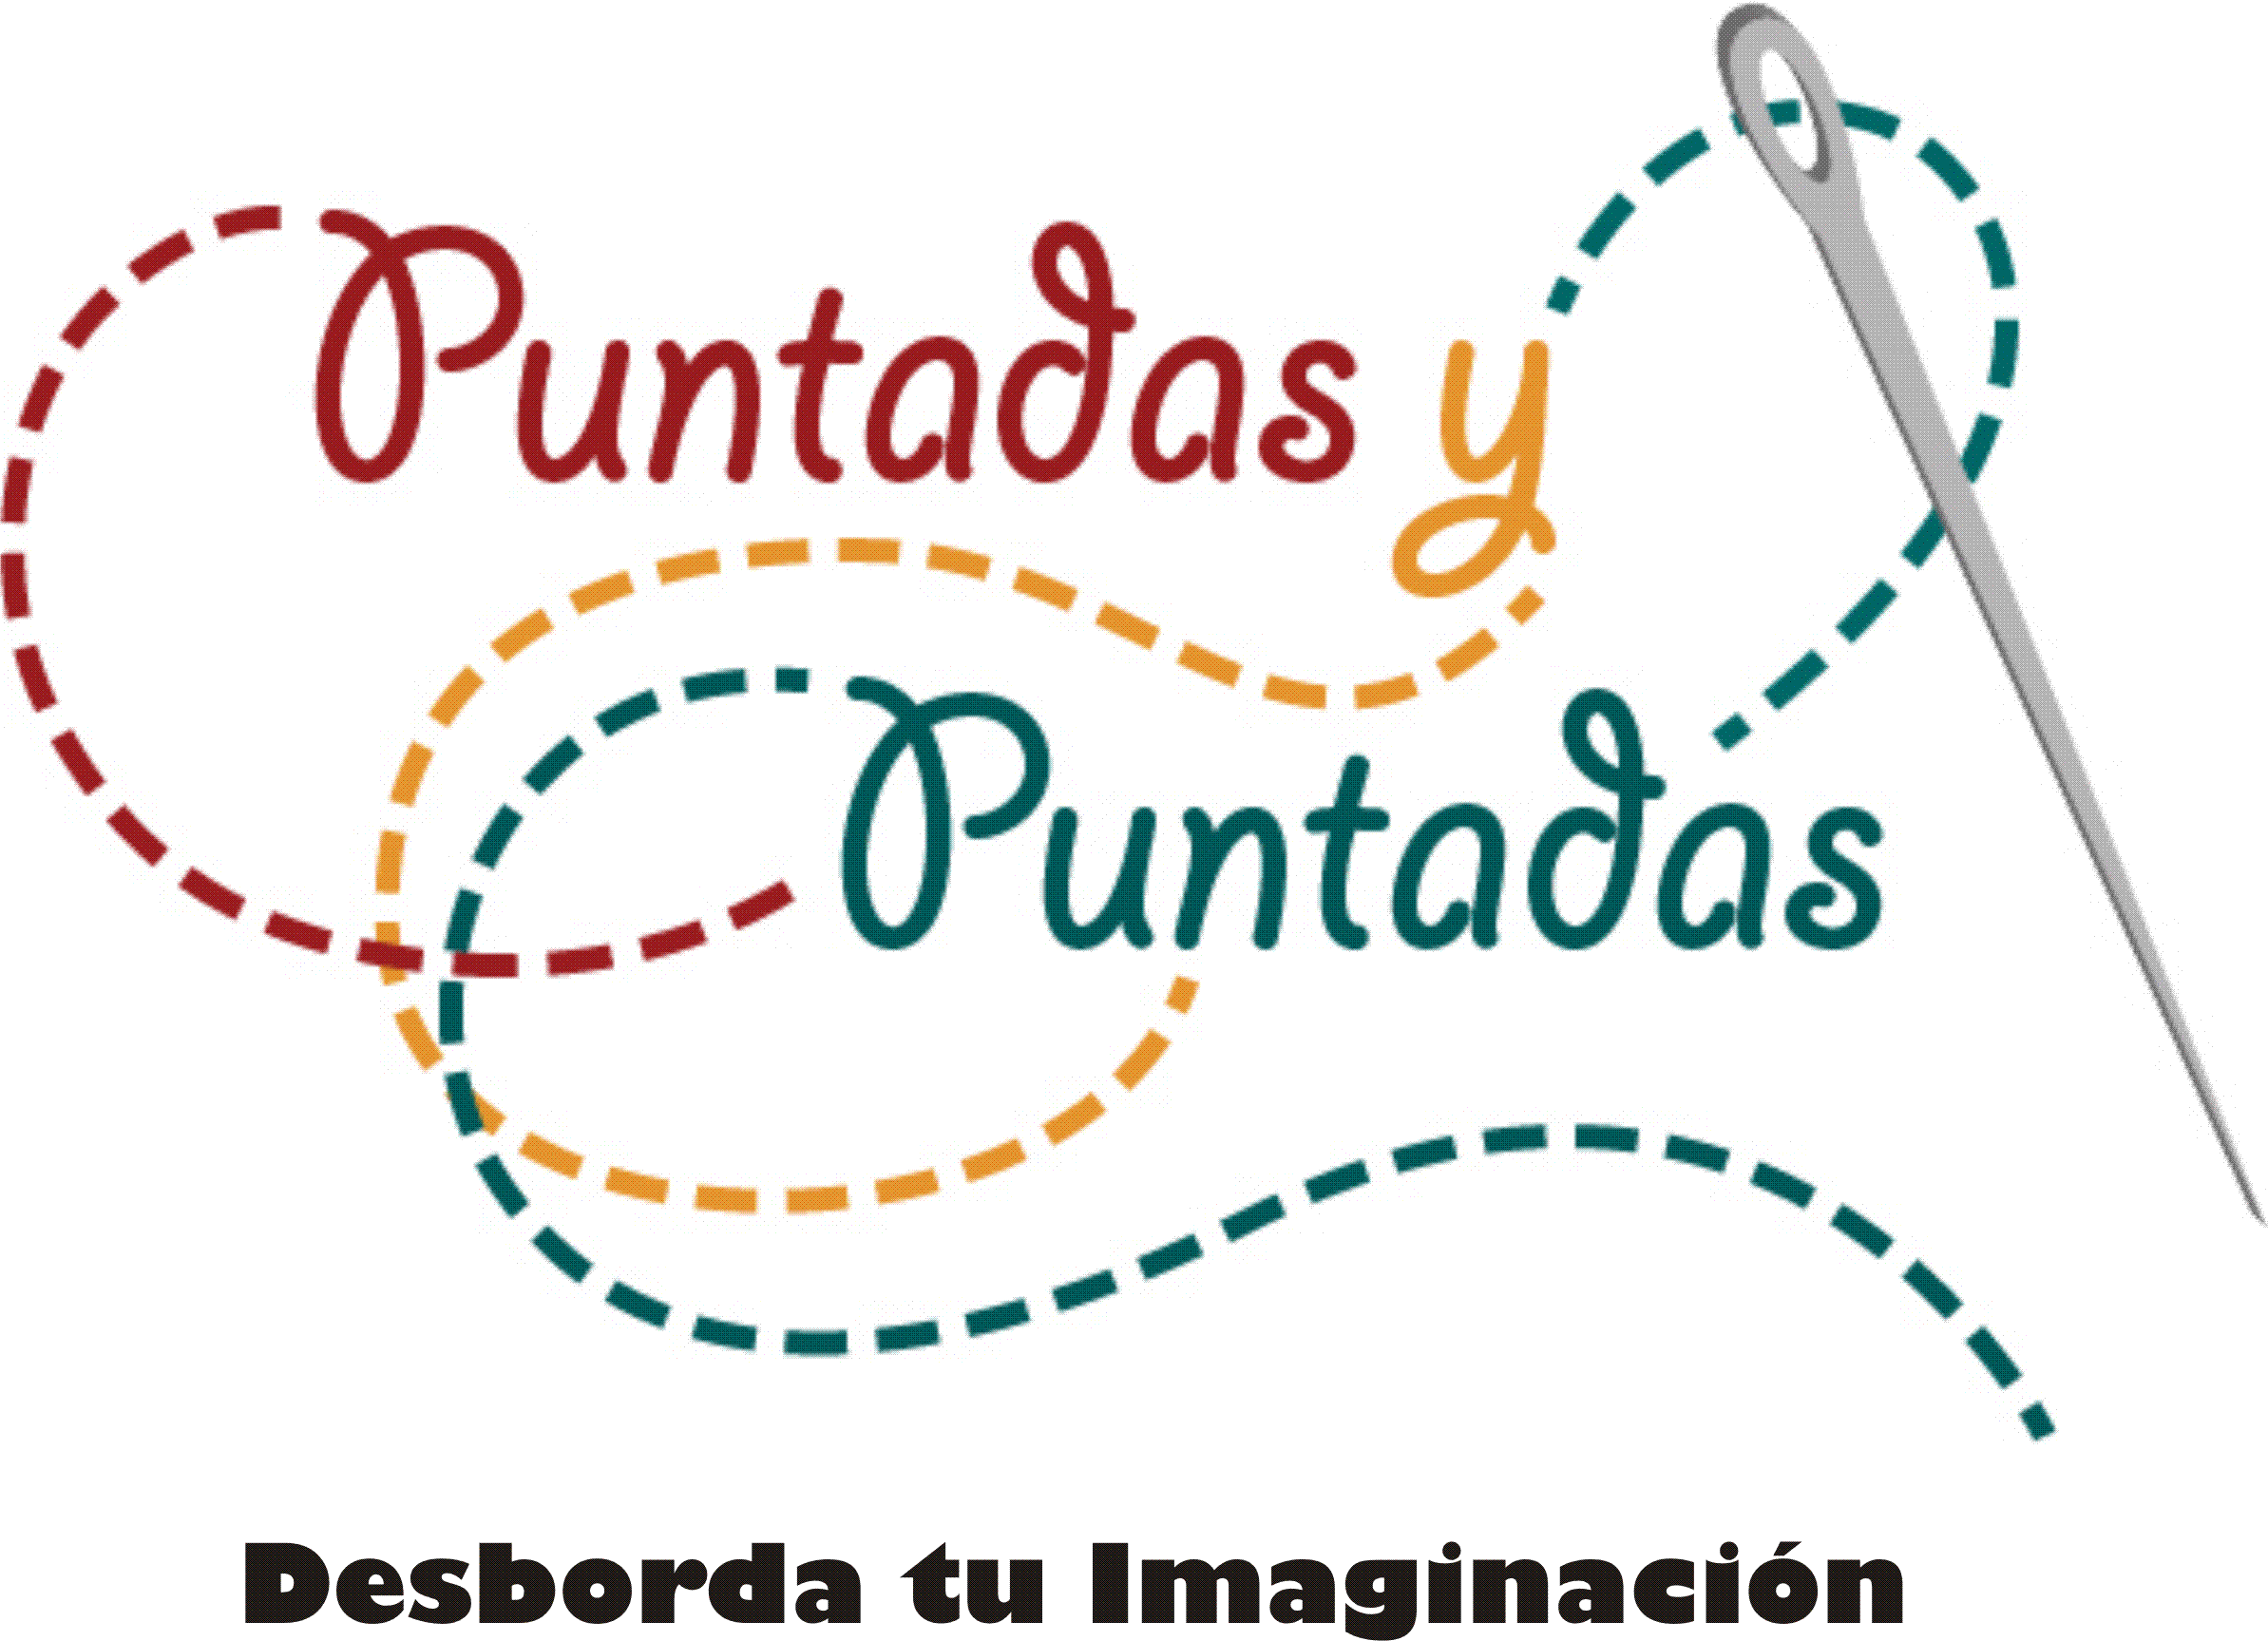 Playeras Cancún by Puntadas y Puntadas. Teléfono: 998 848 0625   y   998 880 5759